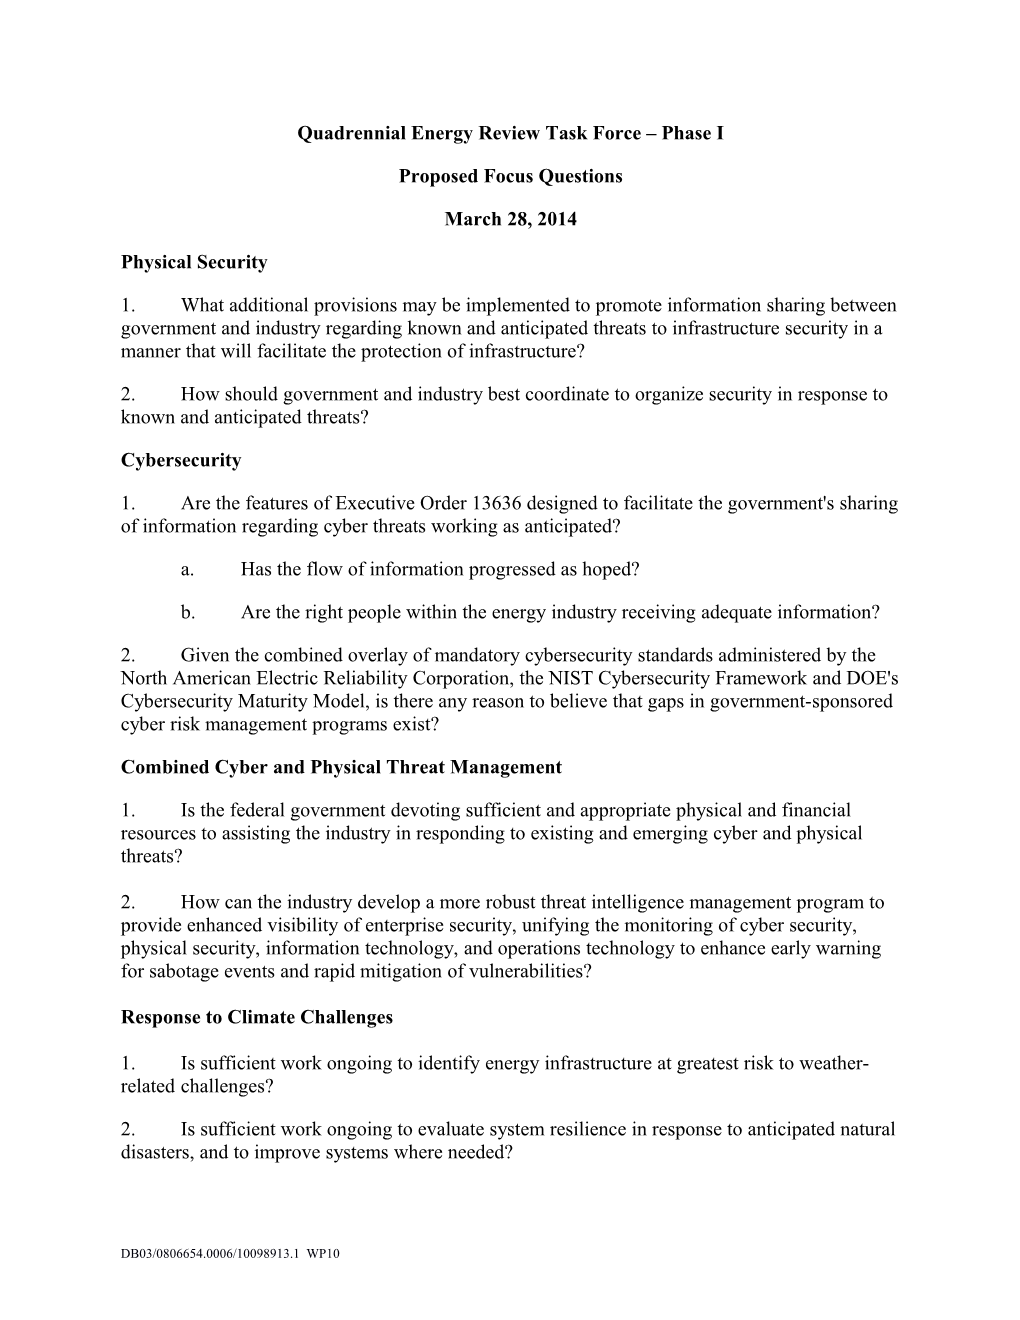 Quadrennial Energy Review Task Force Phase I